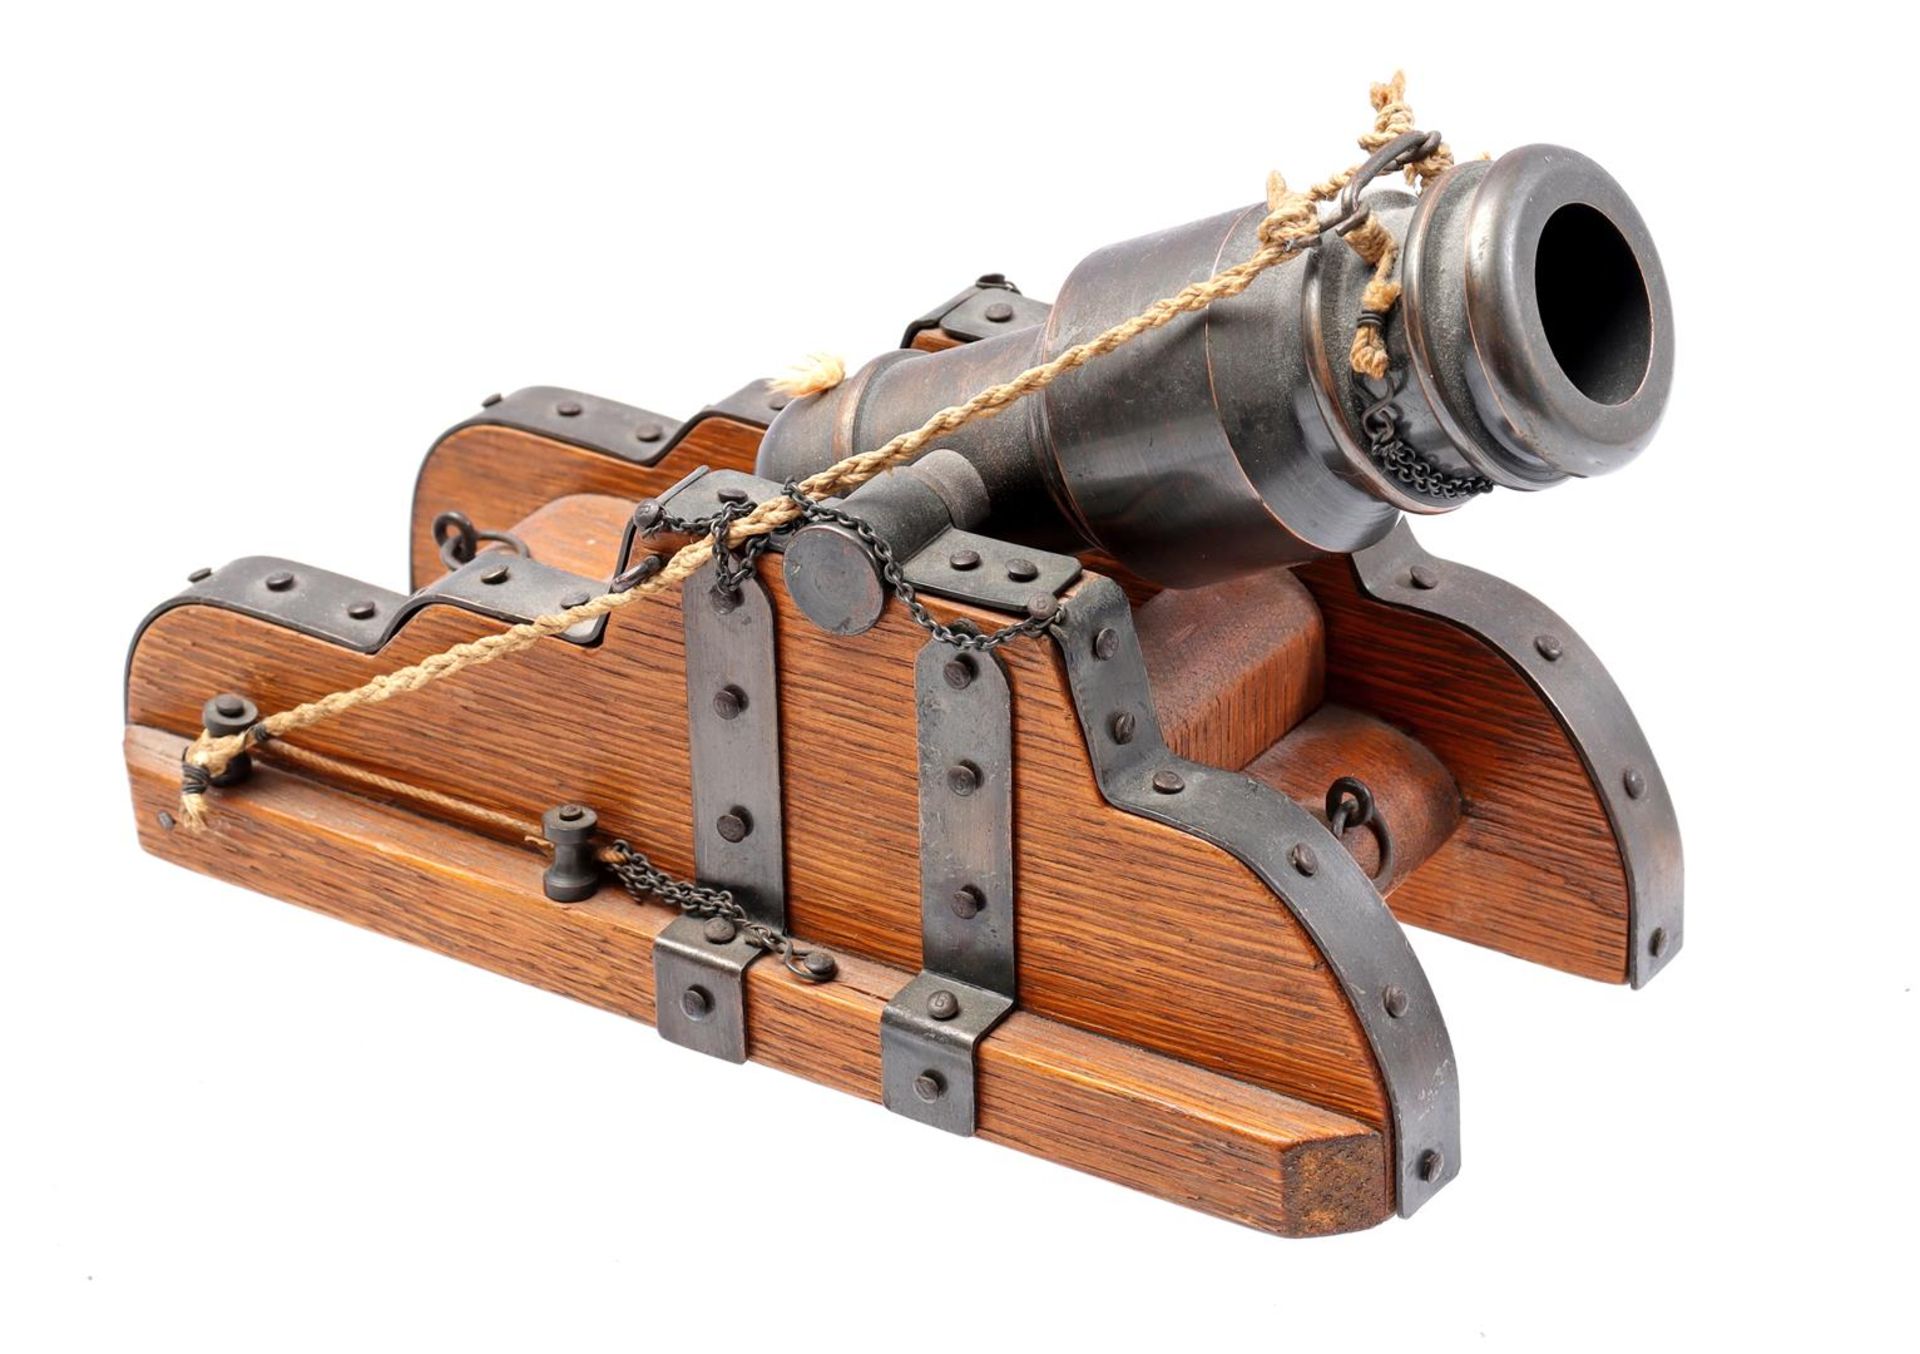 Beautiful model of a mortar gun